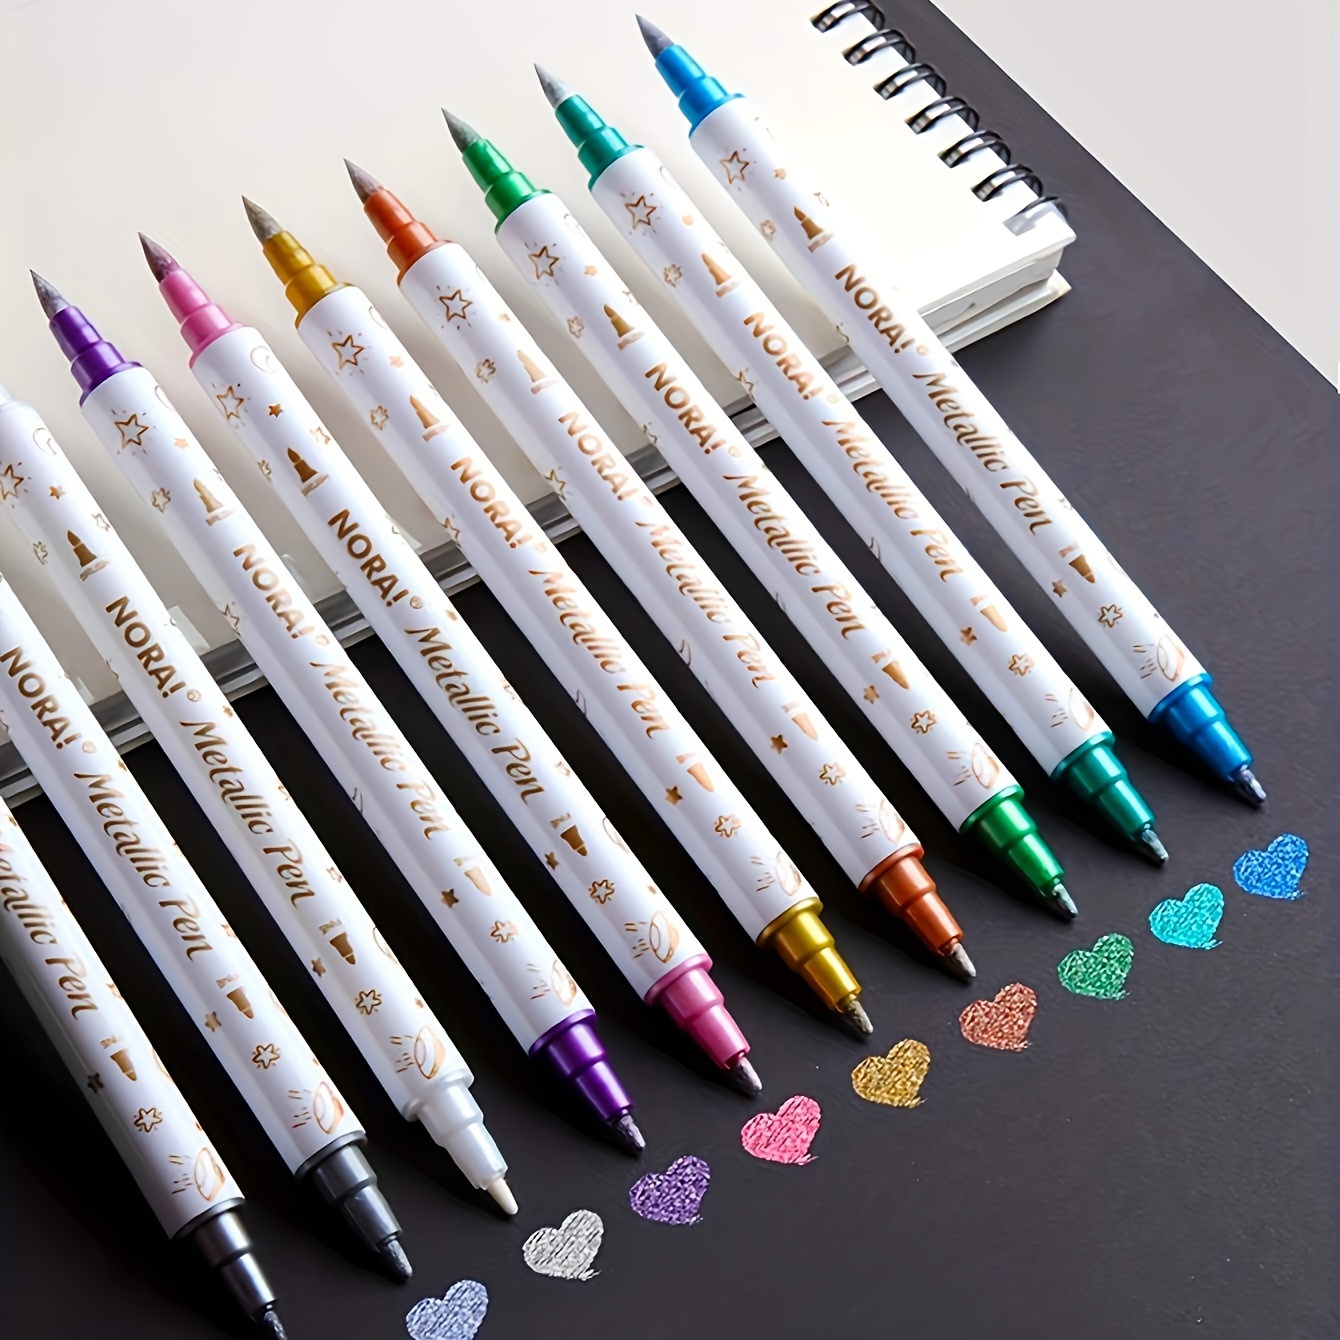 Shuttle Art Rotuladores de doble punta, marcadores artísticos, 30 colores,  bolígrafos de caligrafía de doble punta fina y brocha, perfecto para niños